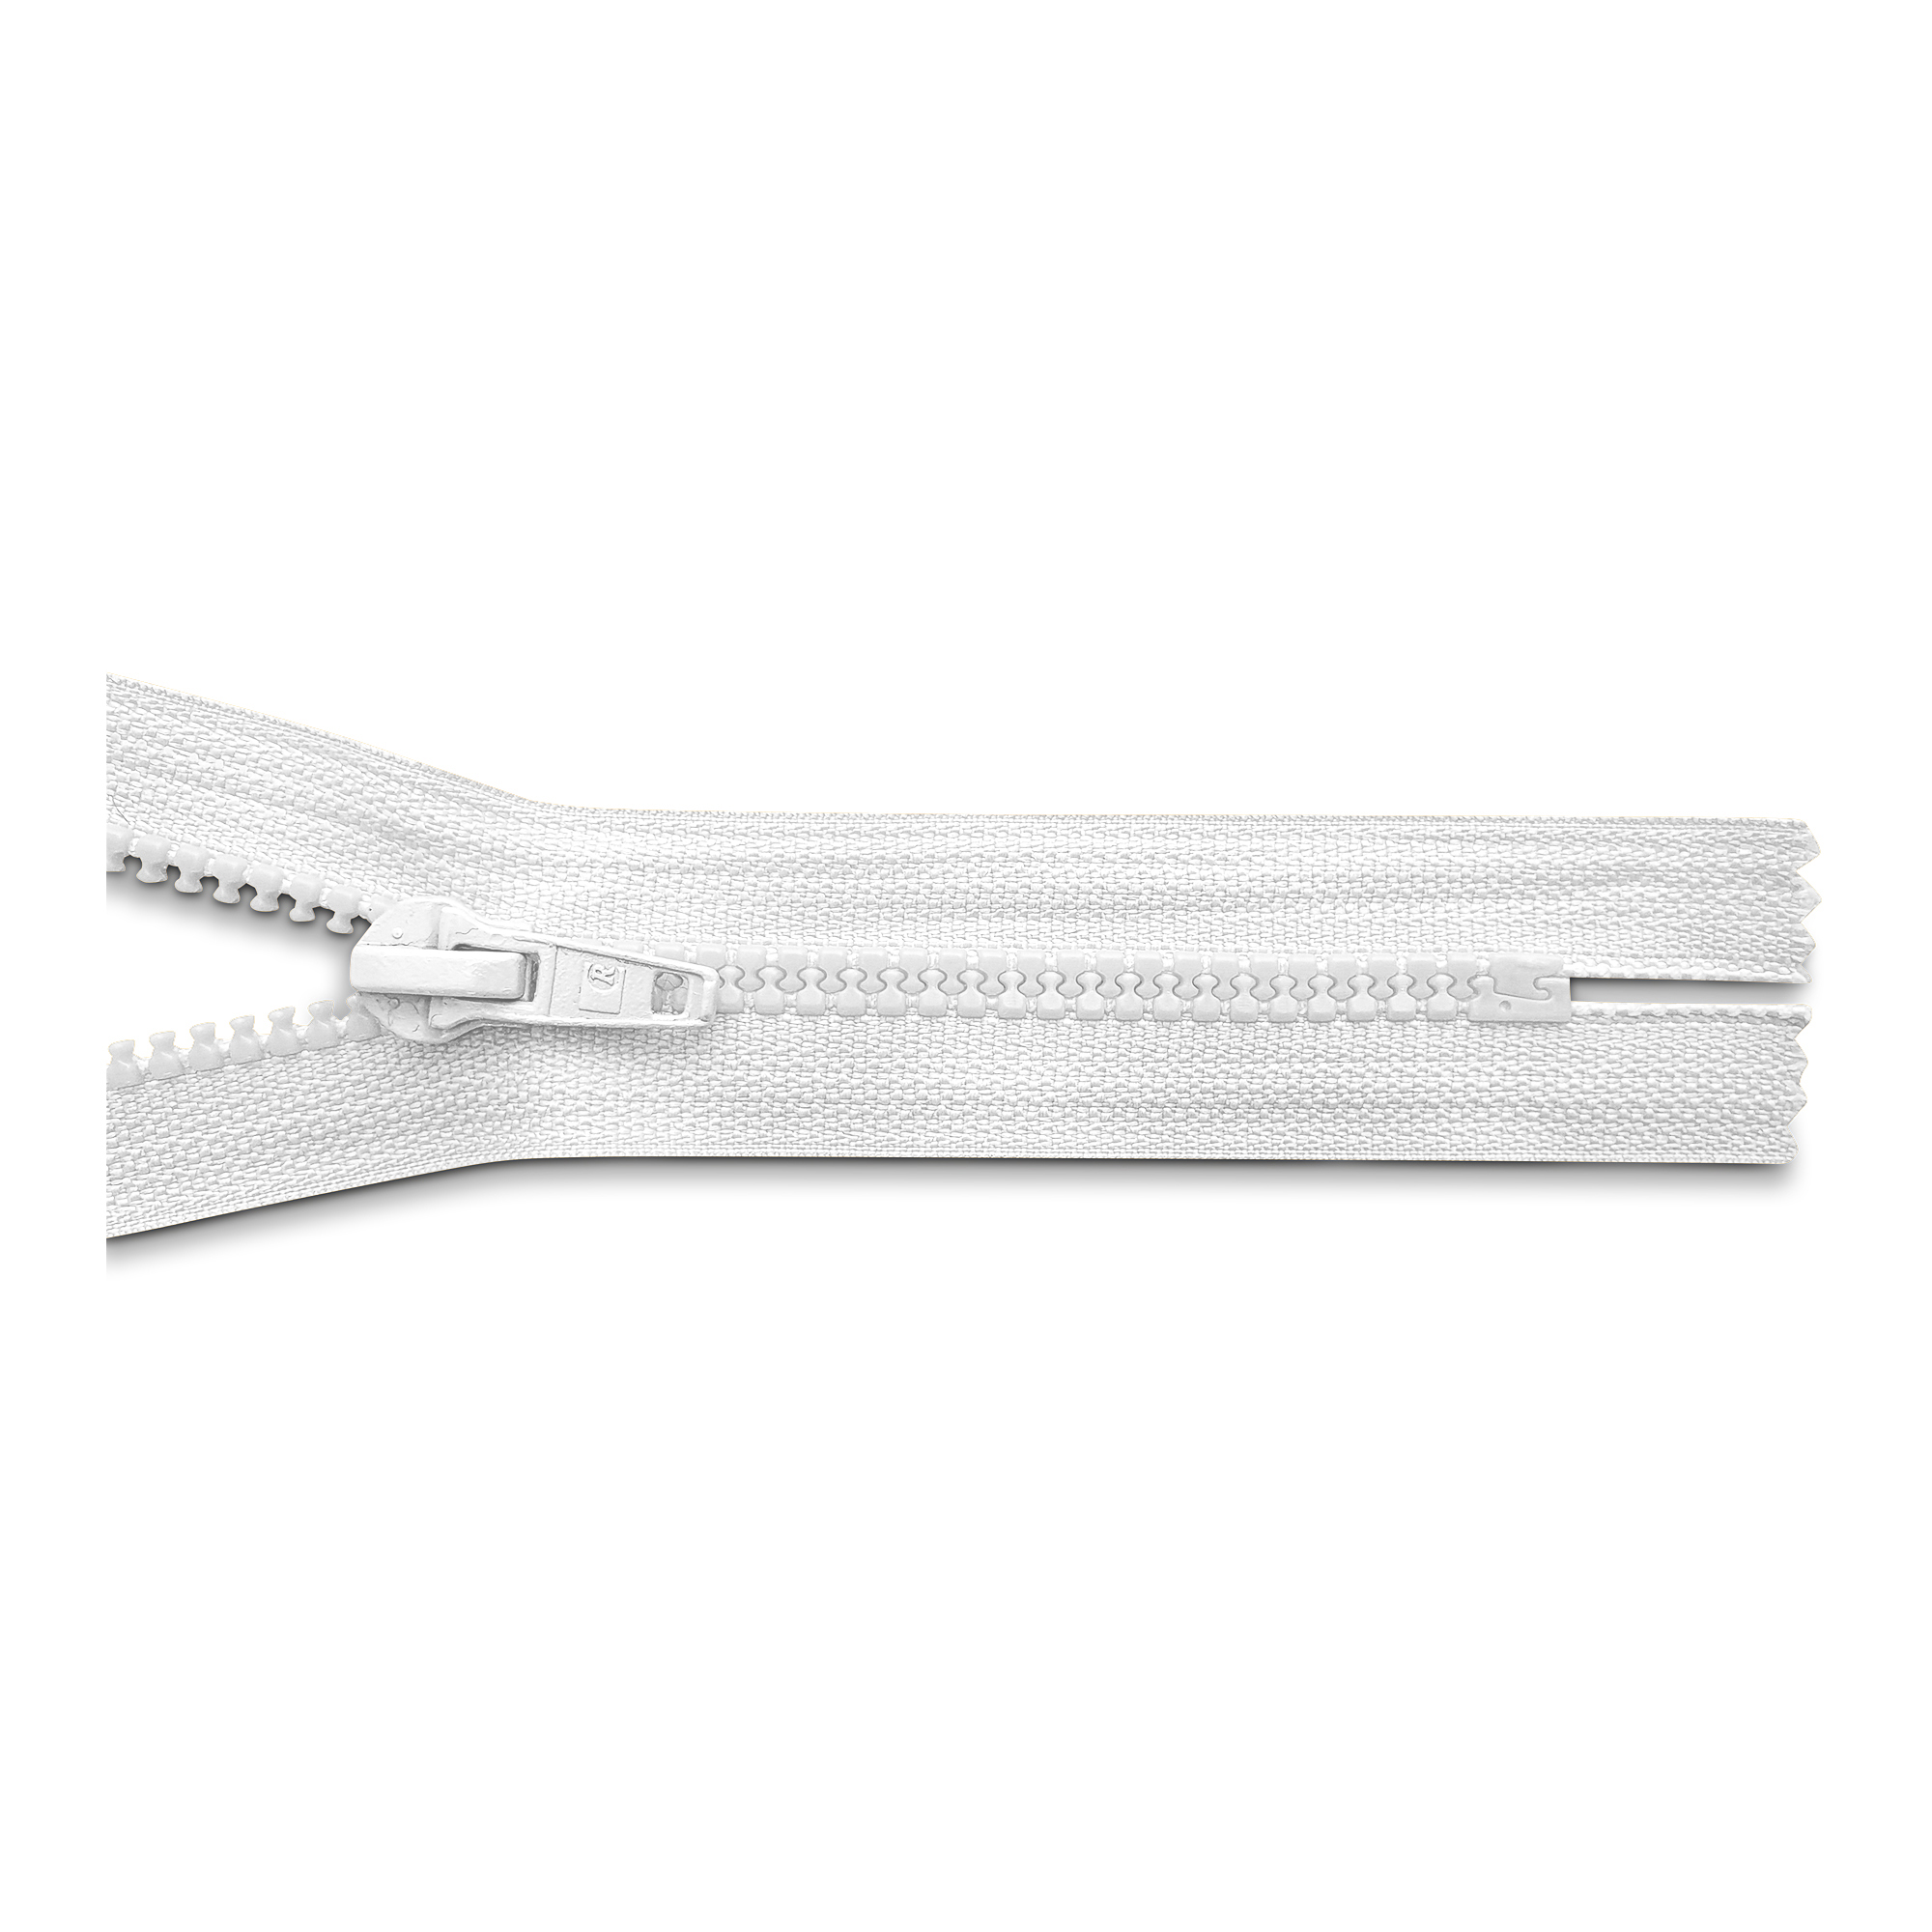 Reißverschluss, nicht teilbar, K.stoff Zähne breit, reinweiß, hochwertiger Marken-Reißverschluss von Rubi/Barcelona